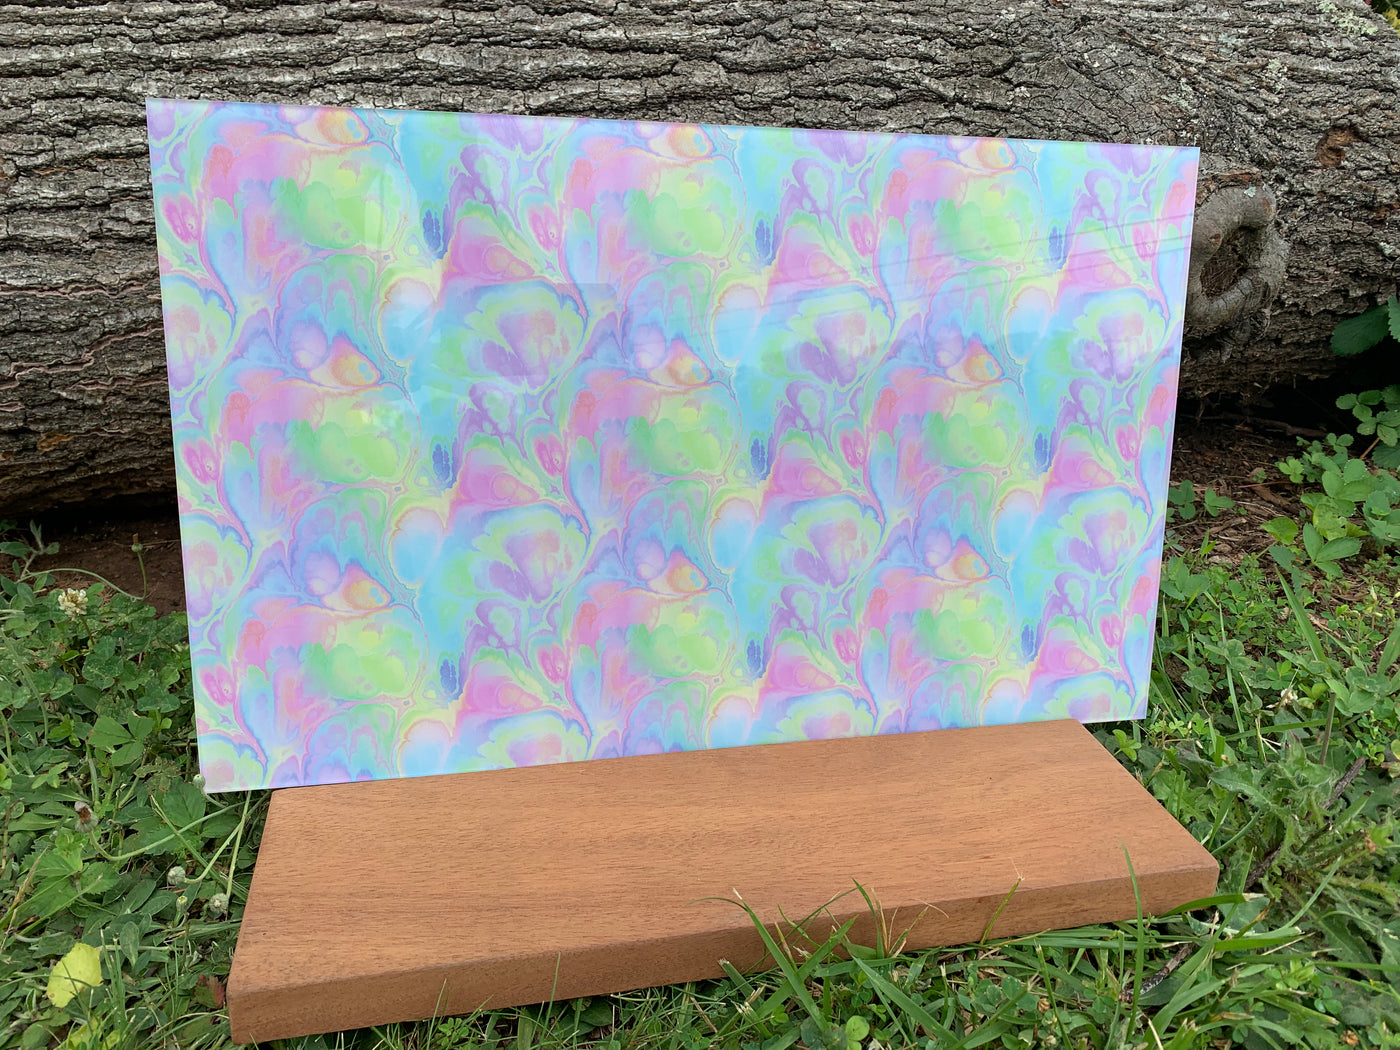 PatternPly® Acrylic Mini Pastel Rainbow Paint Pour